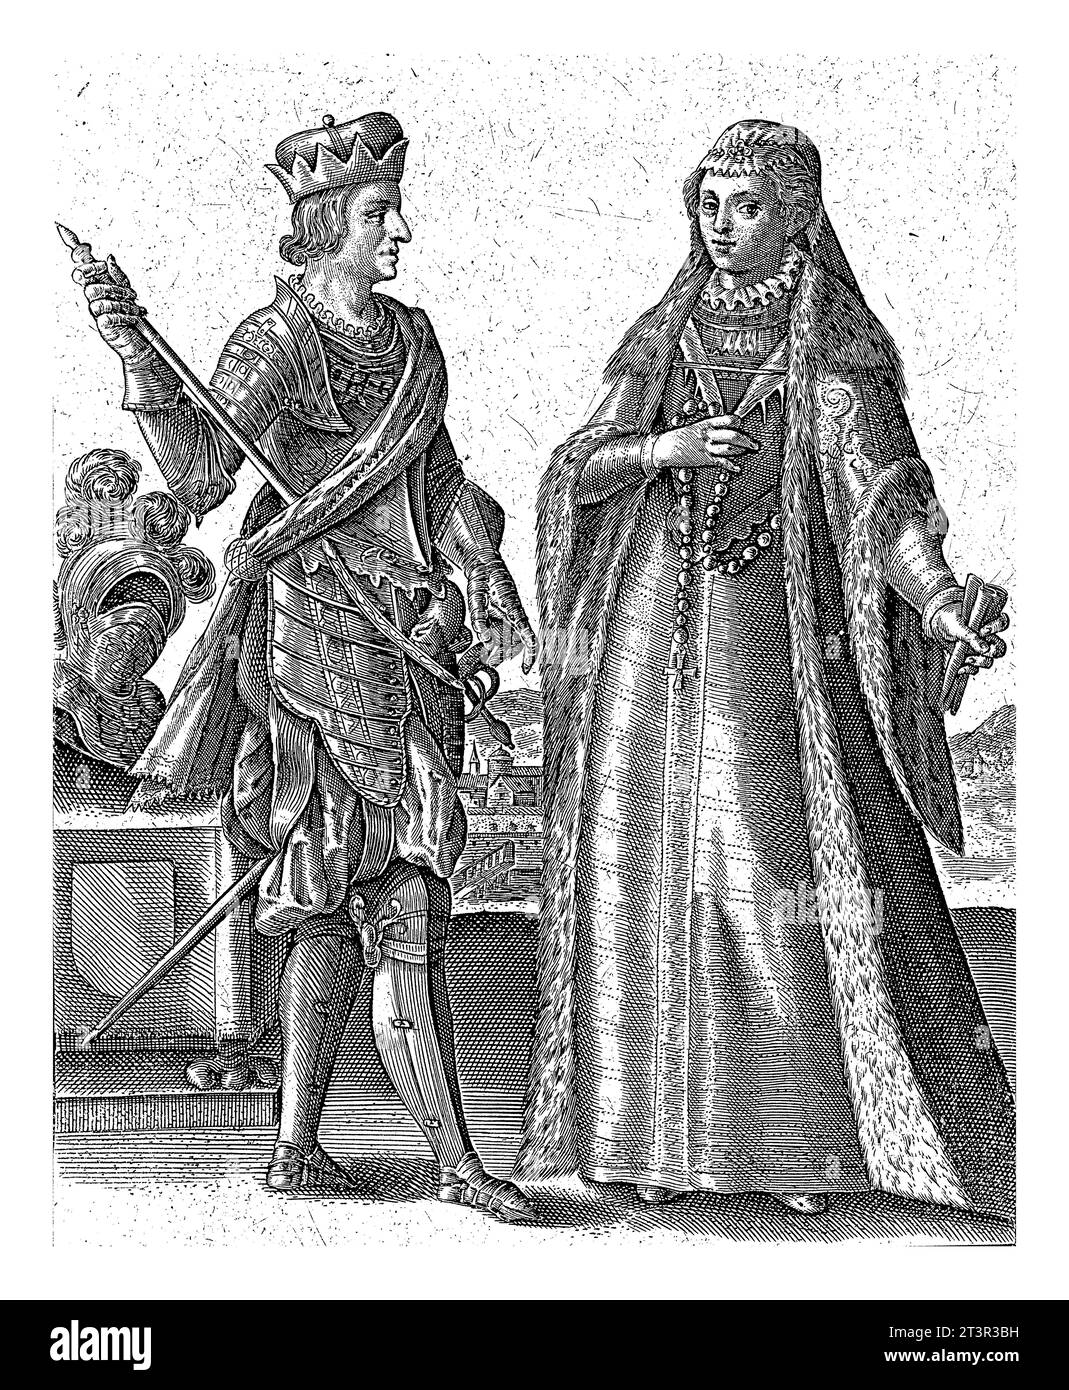 Doppio ritratto di Massimiliano i d'Asburgo e della sua consorte Maria di Borgogna, Simon van de Passe, 1605 - 1647 doppio ritratto di Massimiliano i d'Asburgo Foto Stock